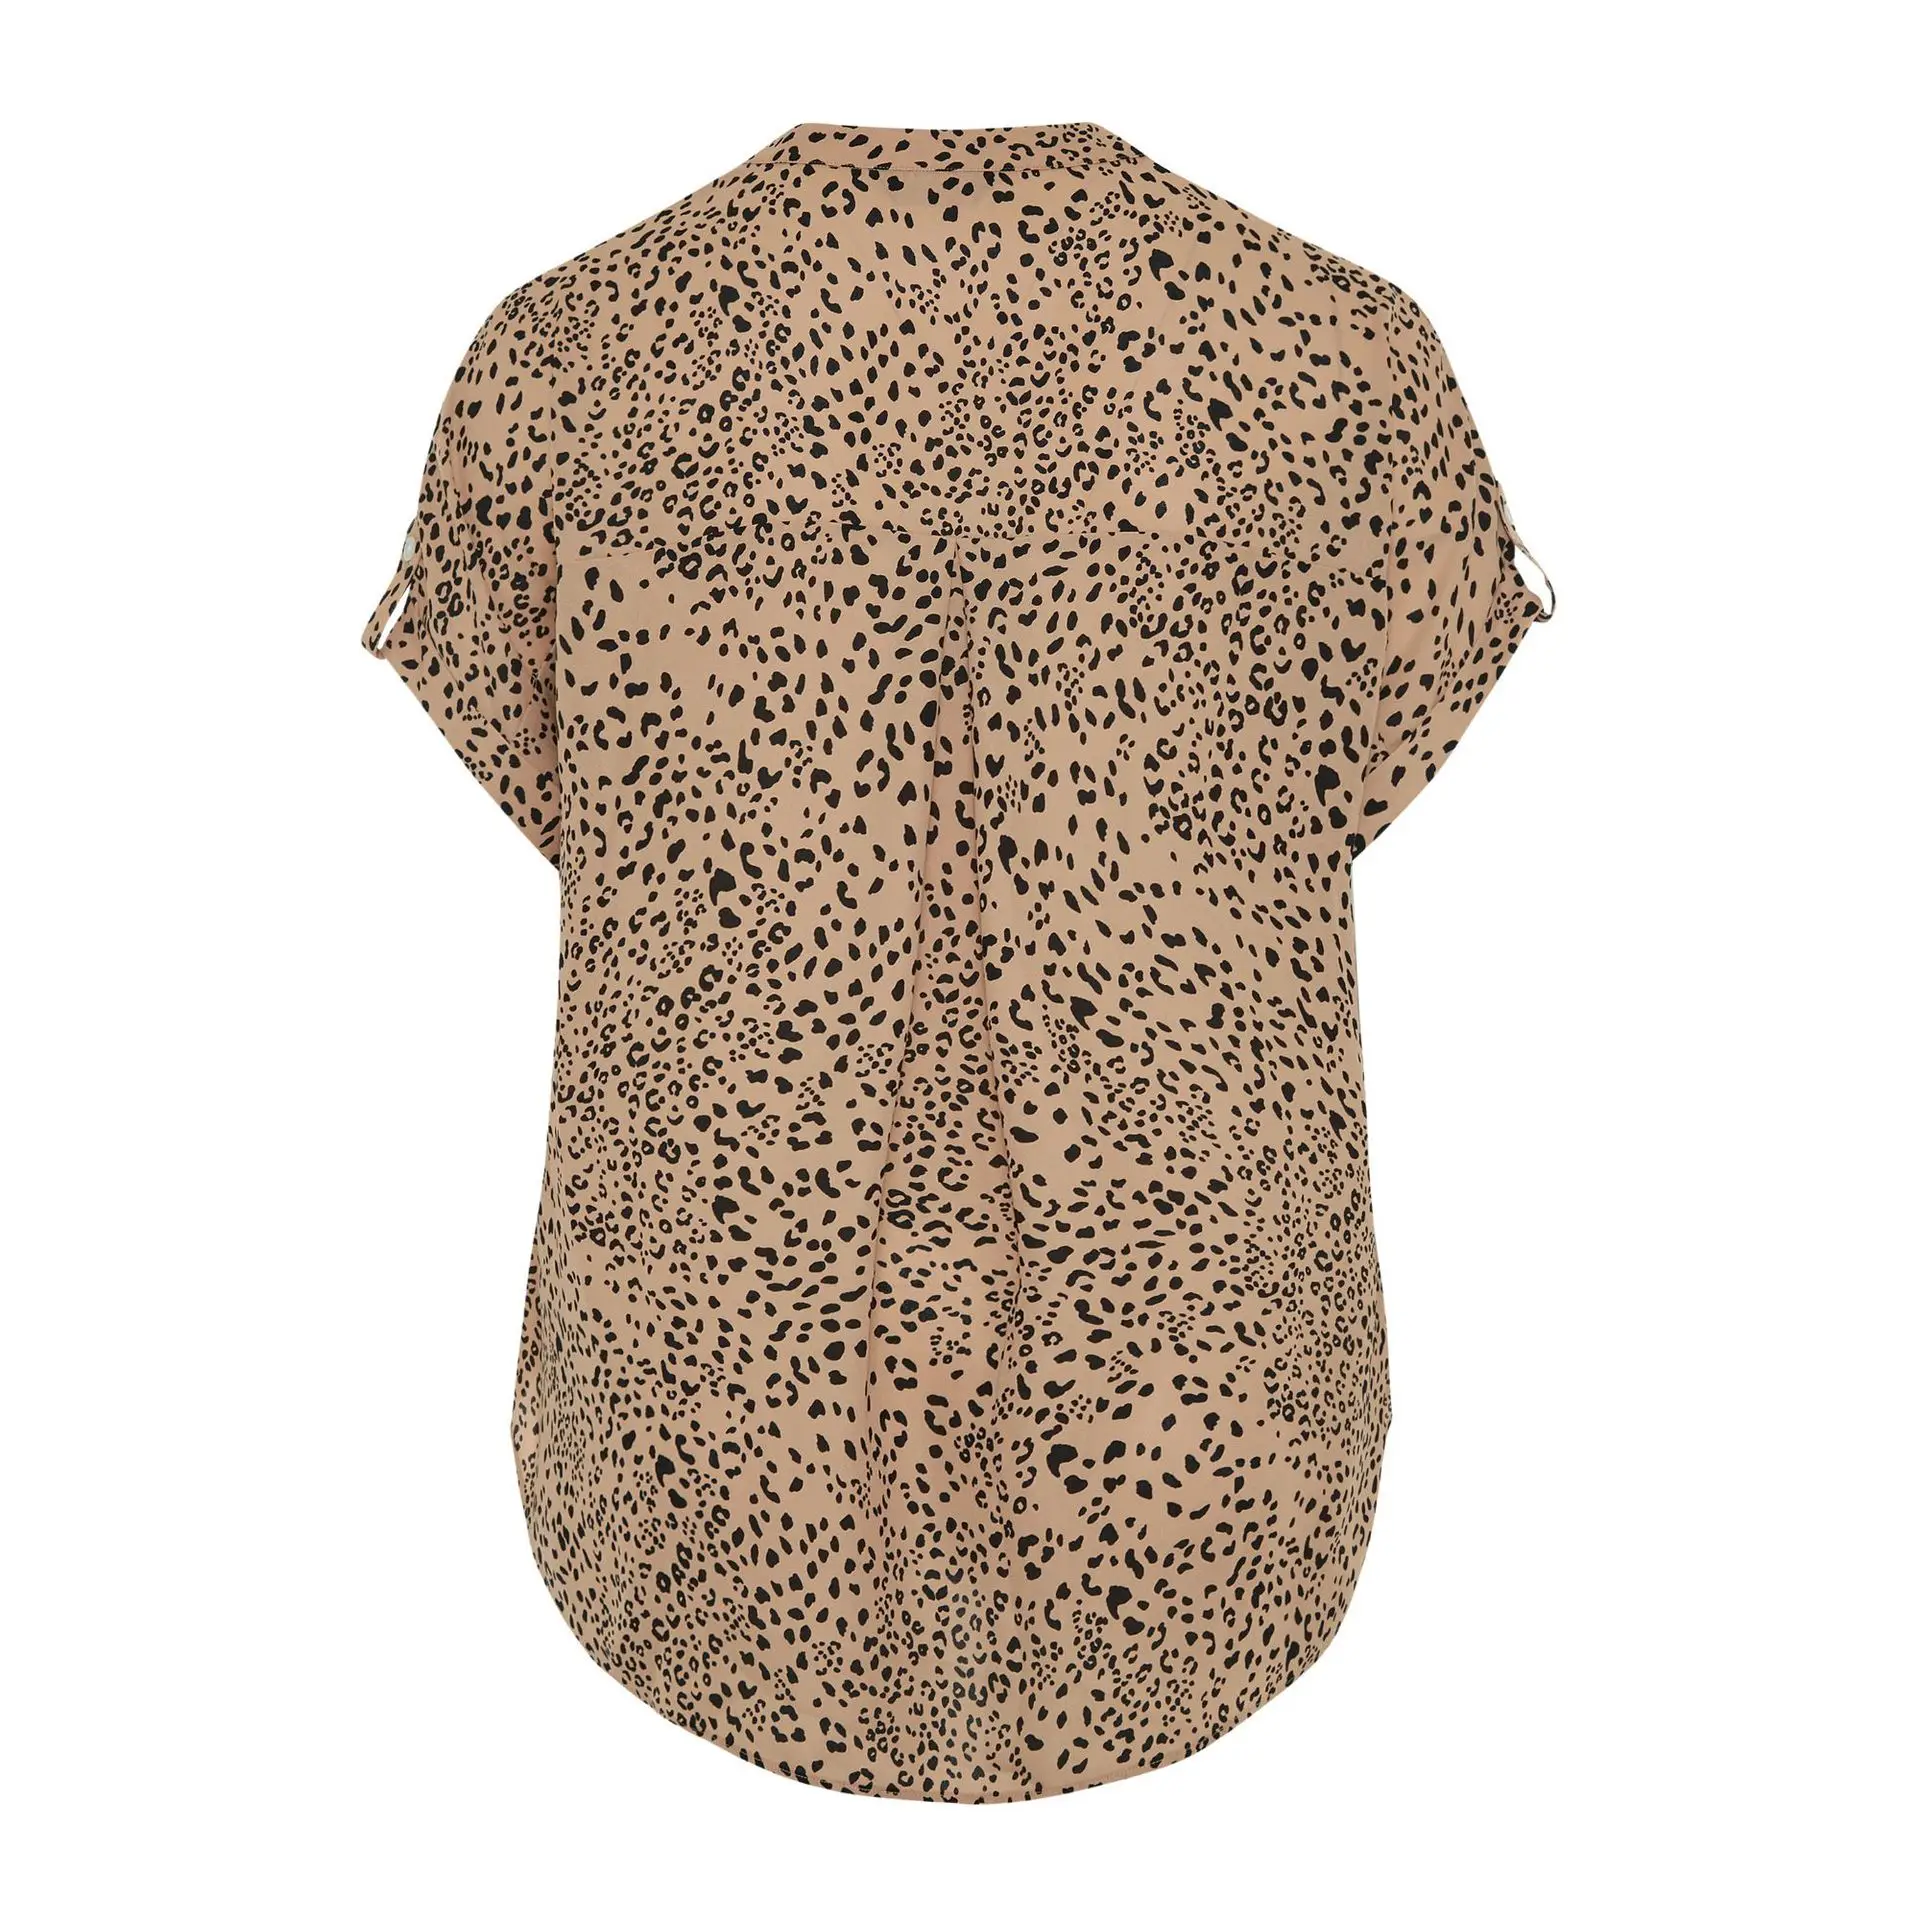 polka dot impressão digital camiseta casual com decote em v topos